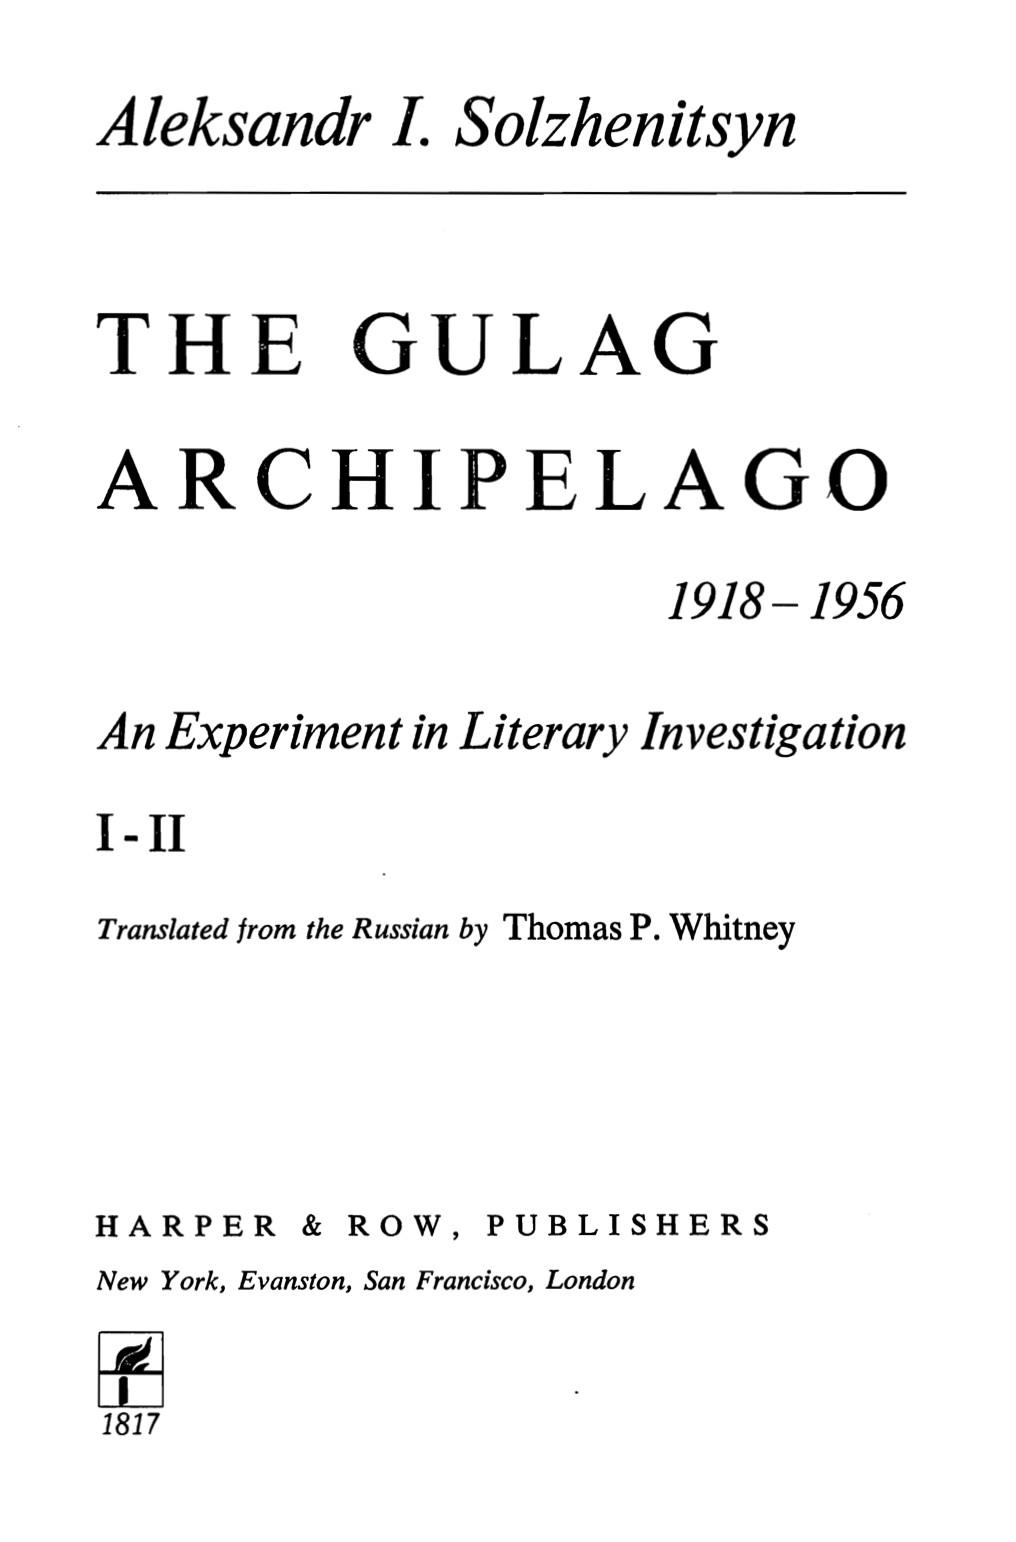 The Gulag Archipelago - 1918-1956 - Volume I-II (1973) by Aleksandr I. Solzhenitsyn